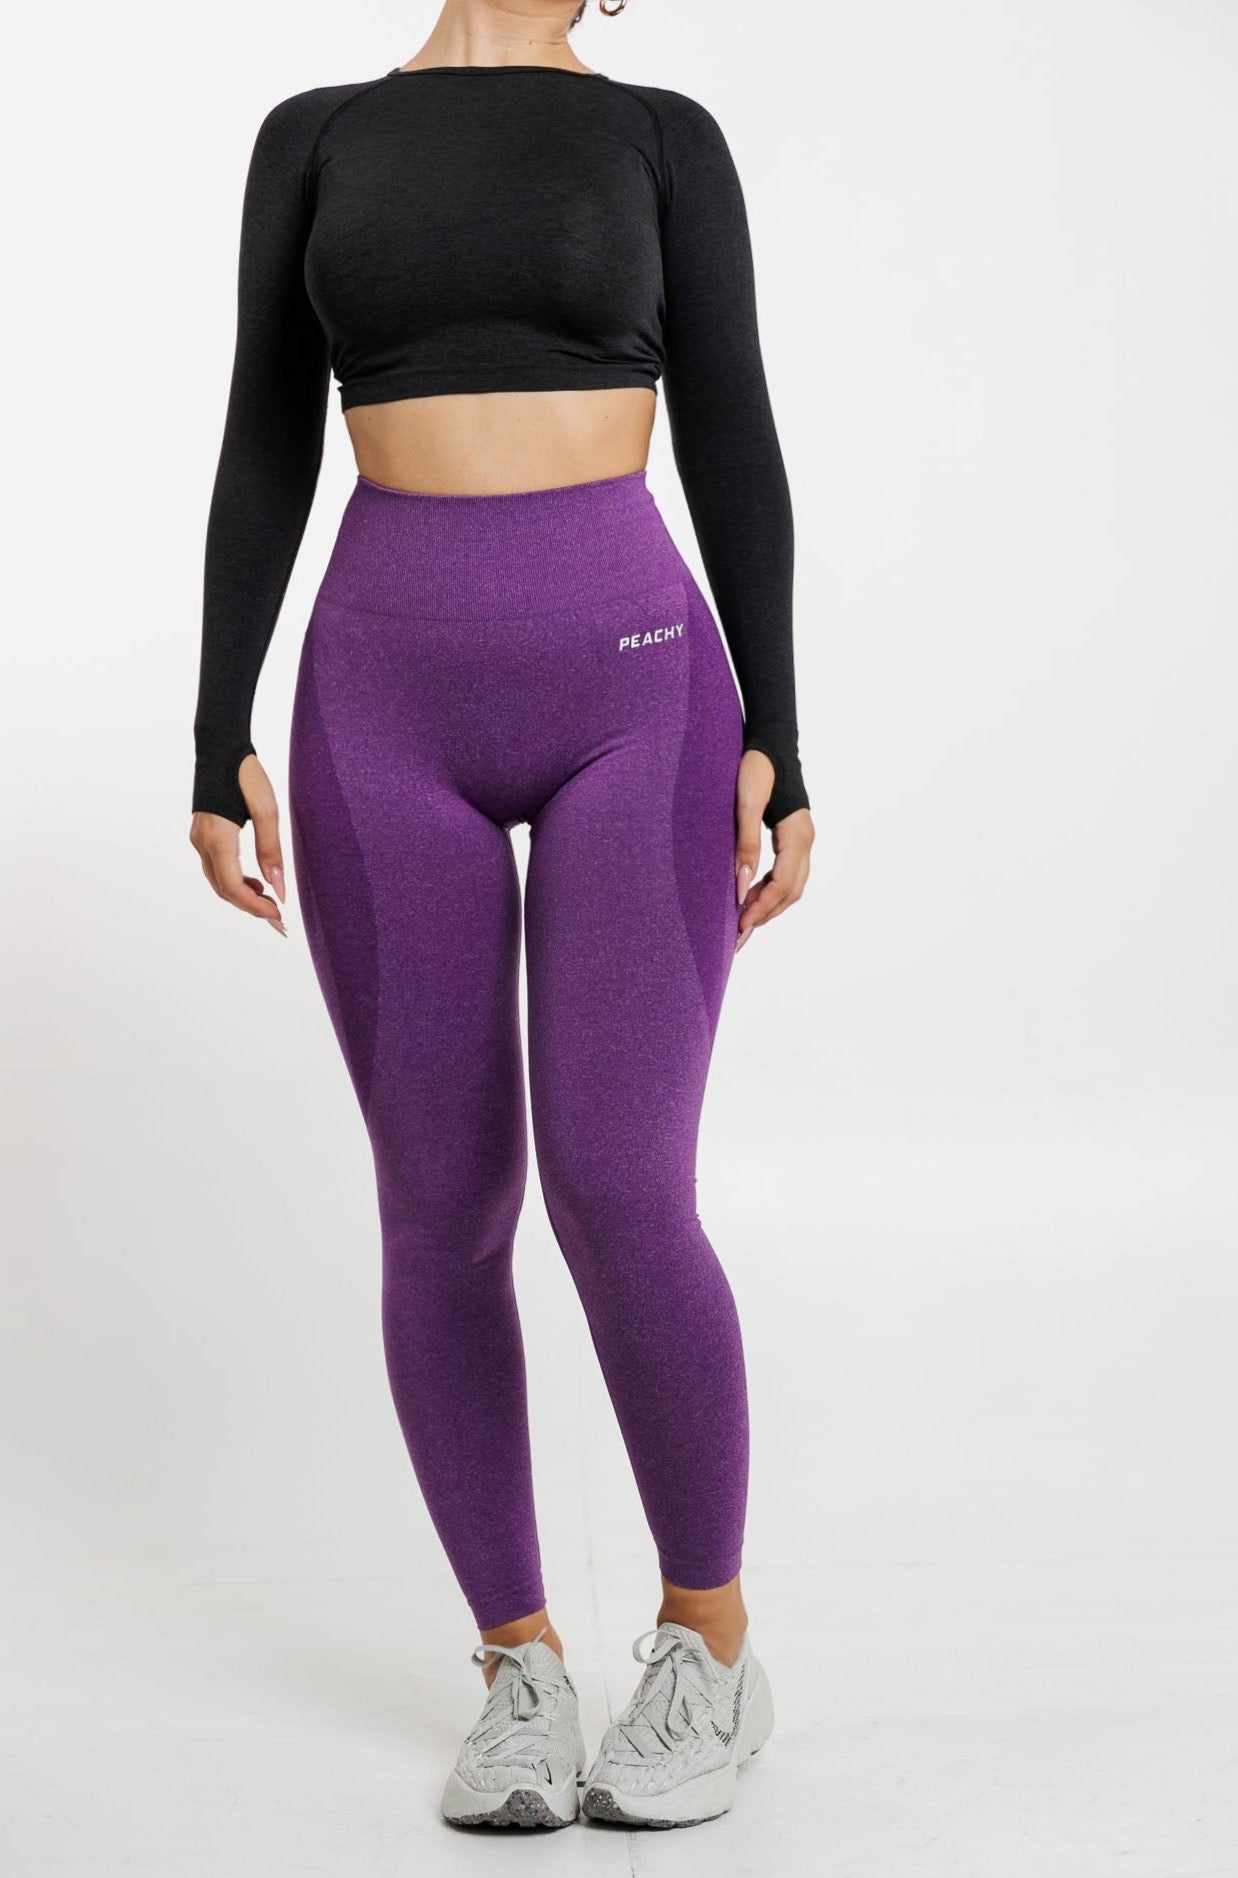 Bombshell Sportswear Women's Pro Seamless Lavender Leggings Size XS 